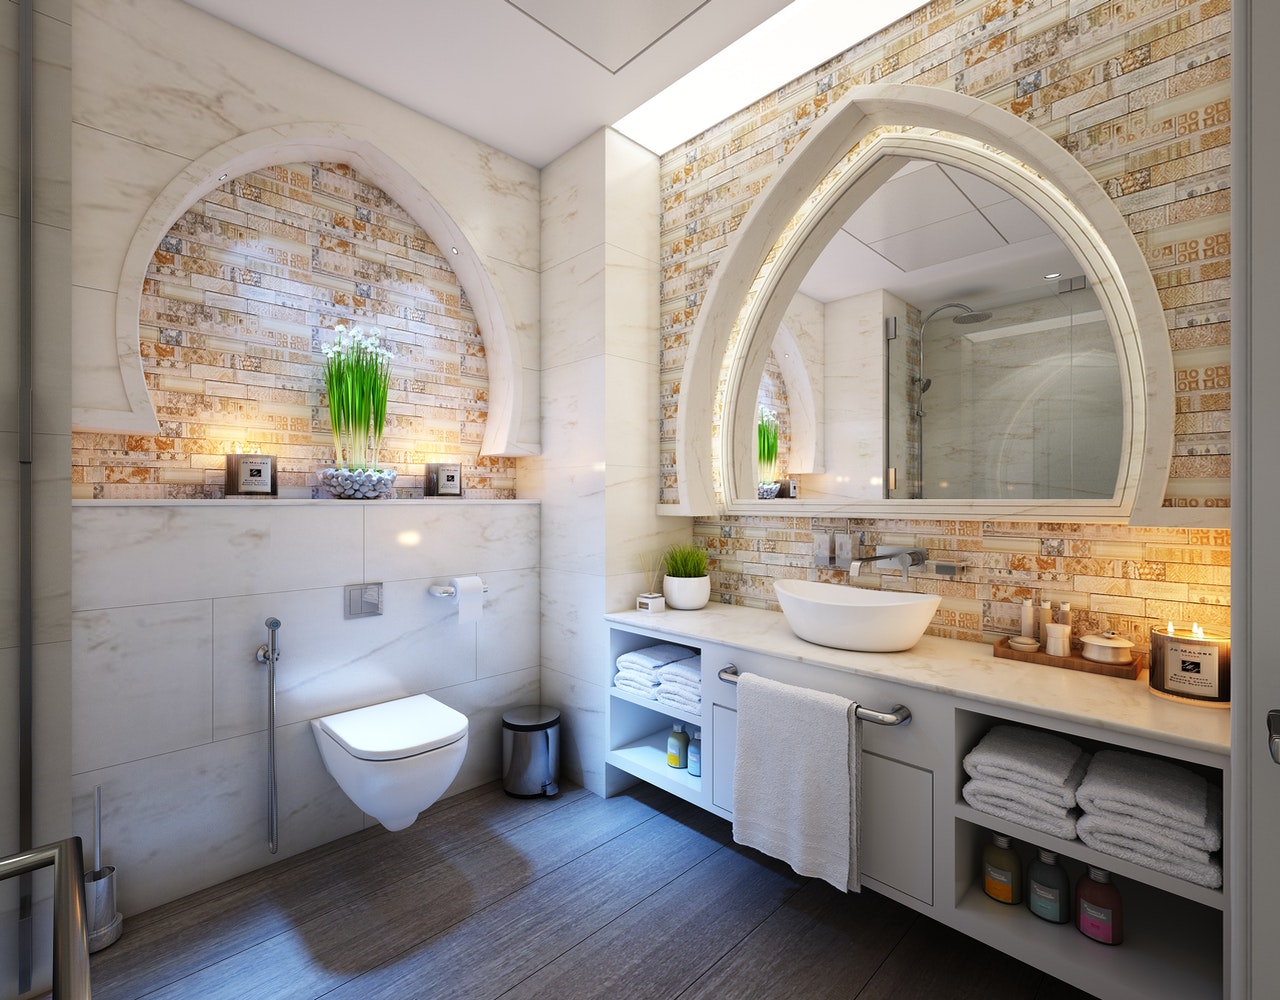 Bathroom Remodeling Tips from Saint Petersburg Home Builders